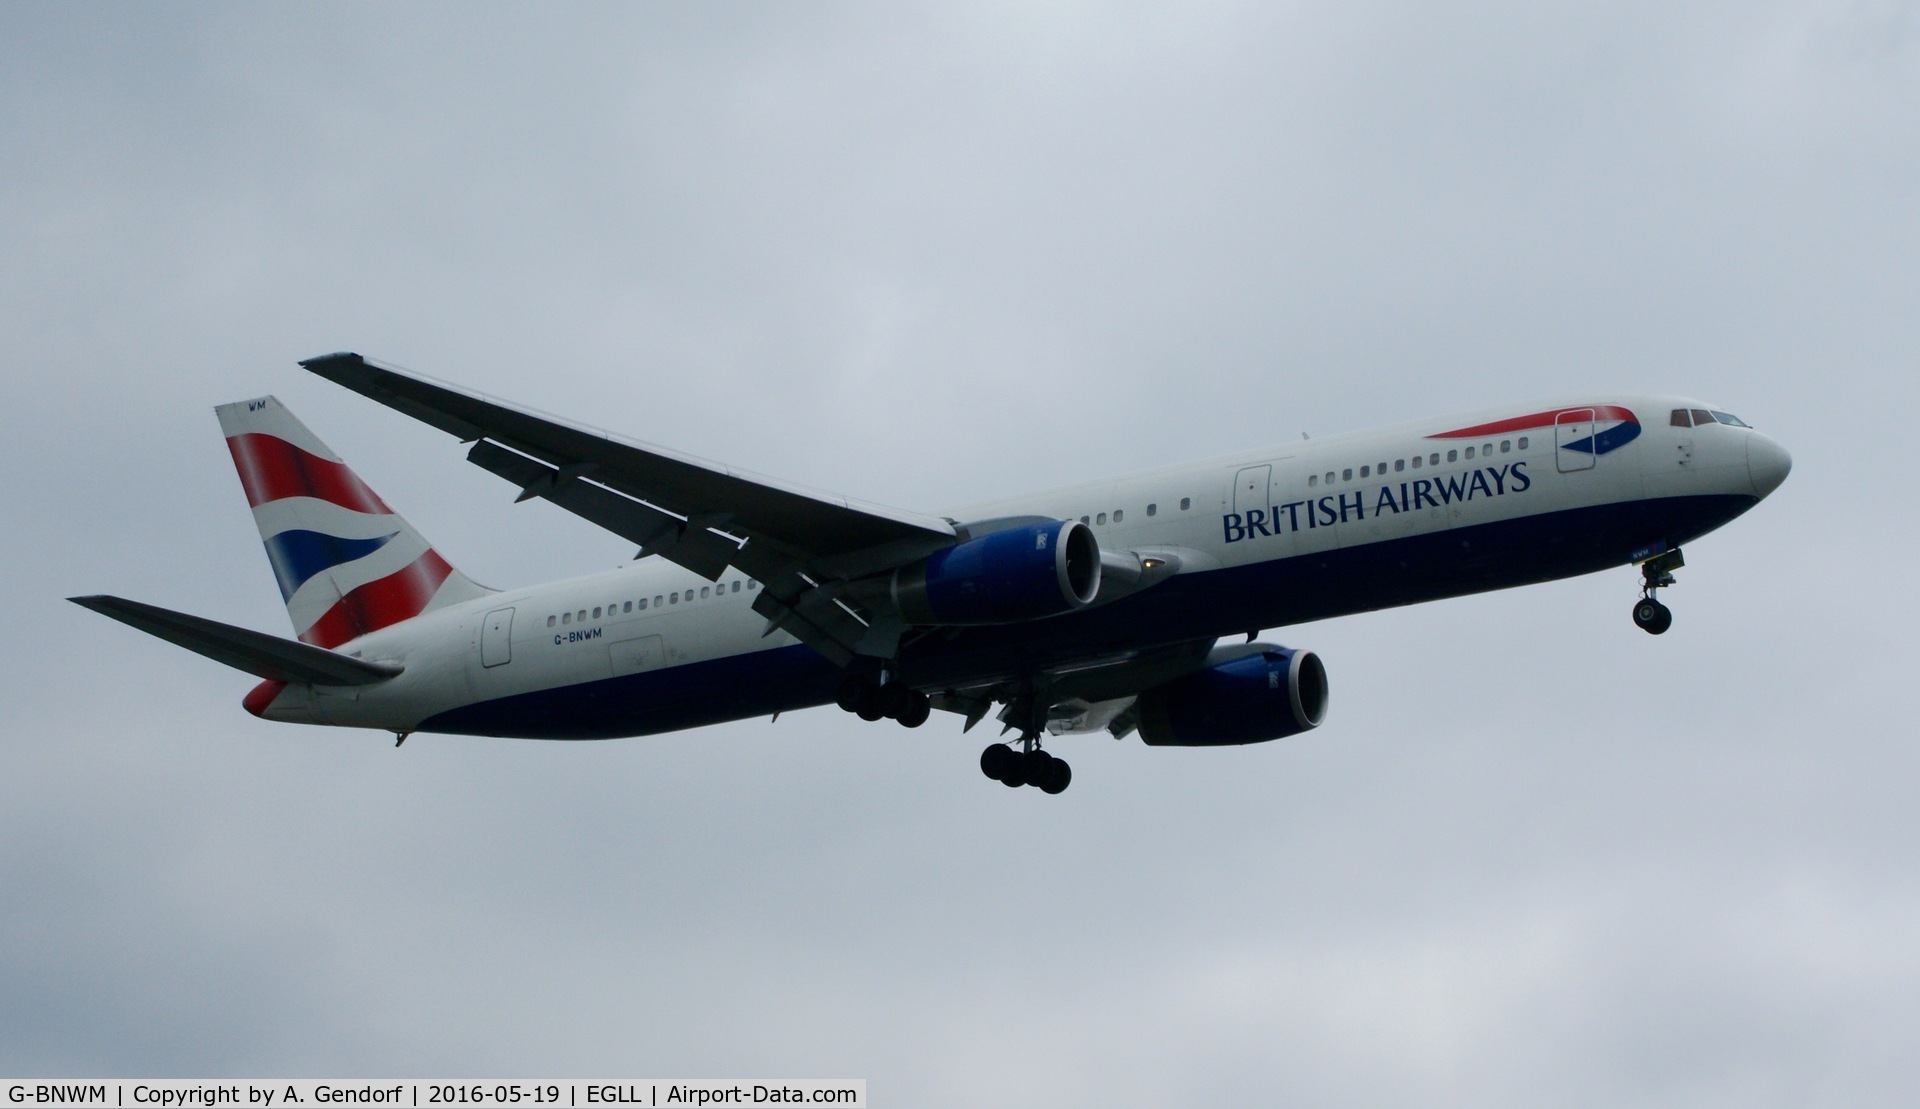 G-BNWM, 1991 Boeing 767-336 C/N 25204, British Airways, is here landing at London Heathrow(EGLL)
**stored since 07/2016**